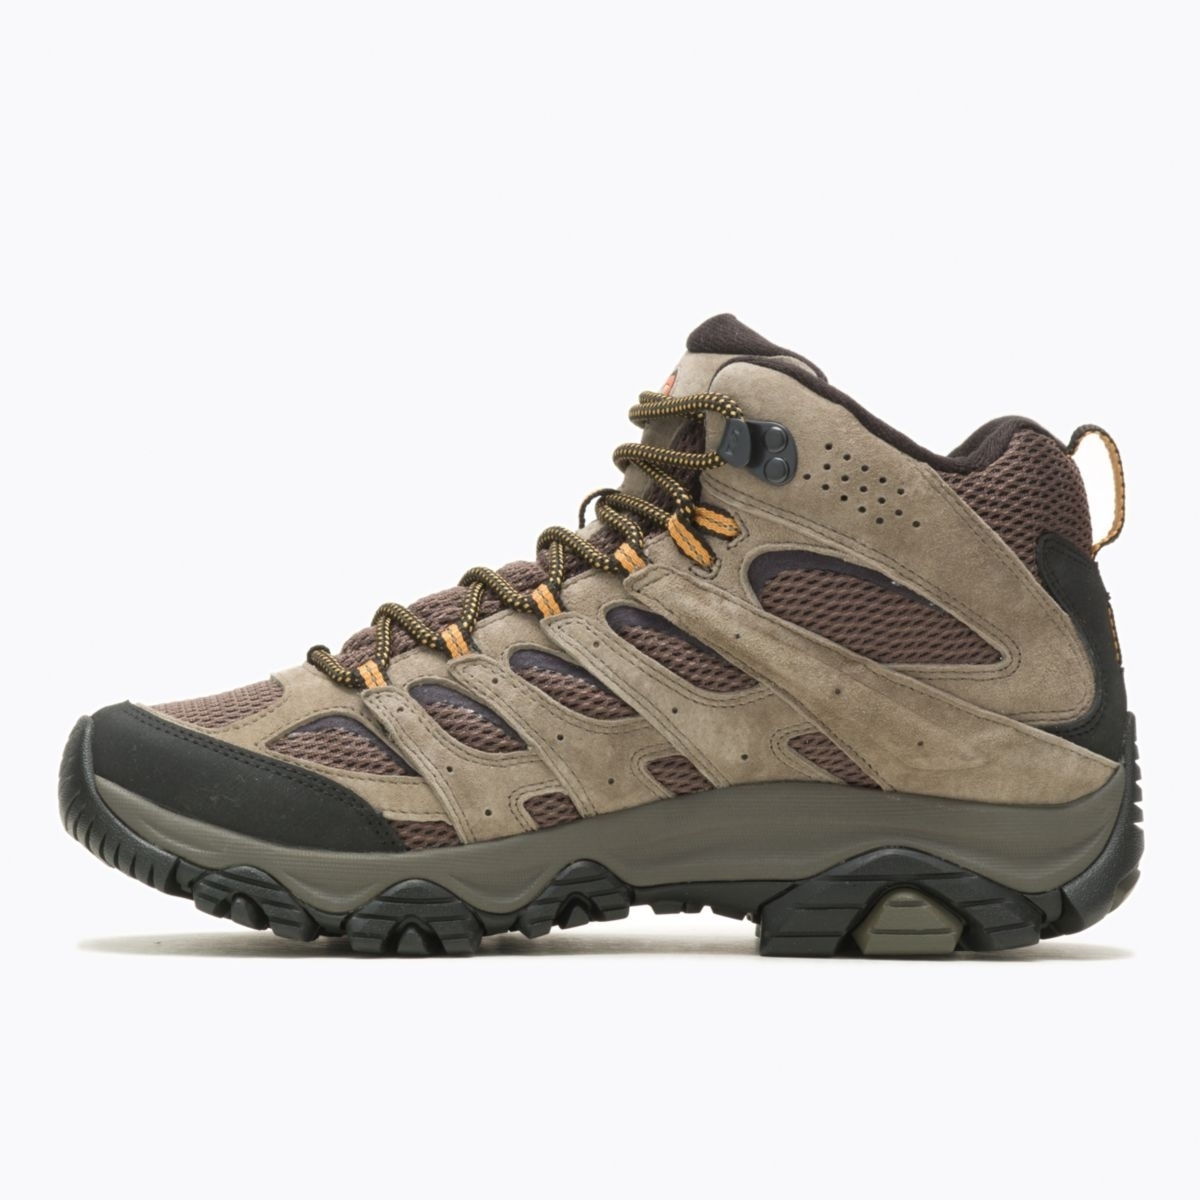 Merrell Men's Moab 3 Mid GORE-TEX Hiking Boot Walnut - J035795 WALNUT - WALNUT, 10.5